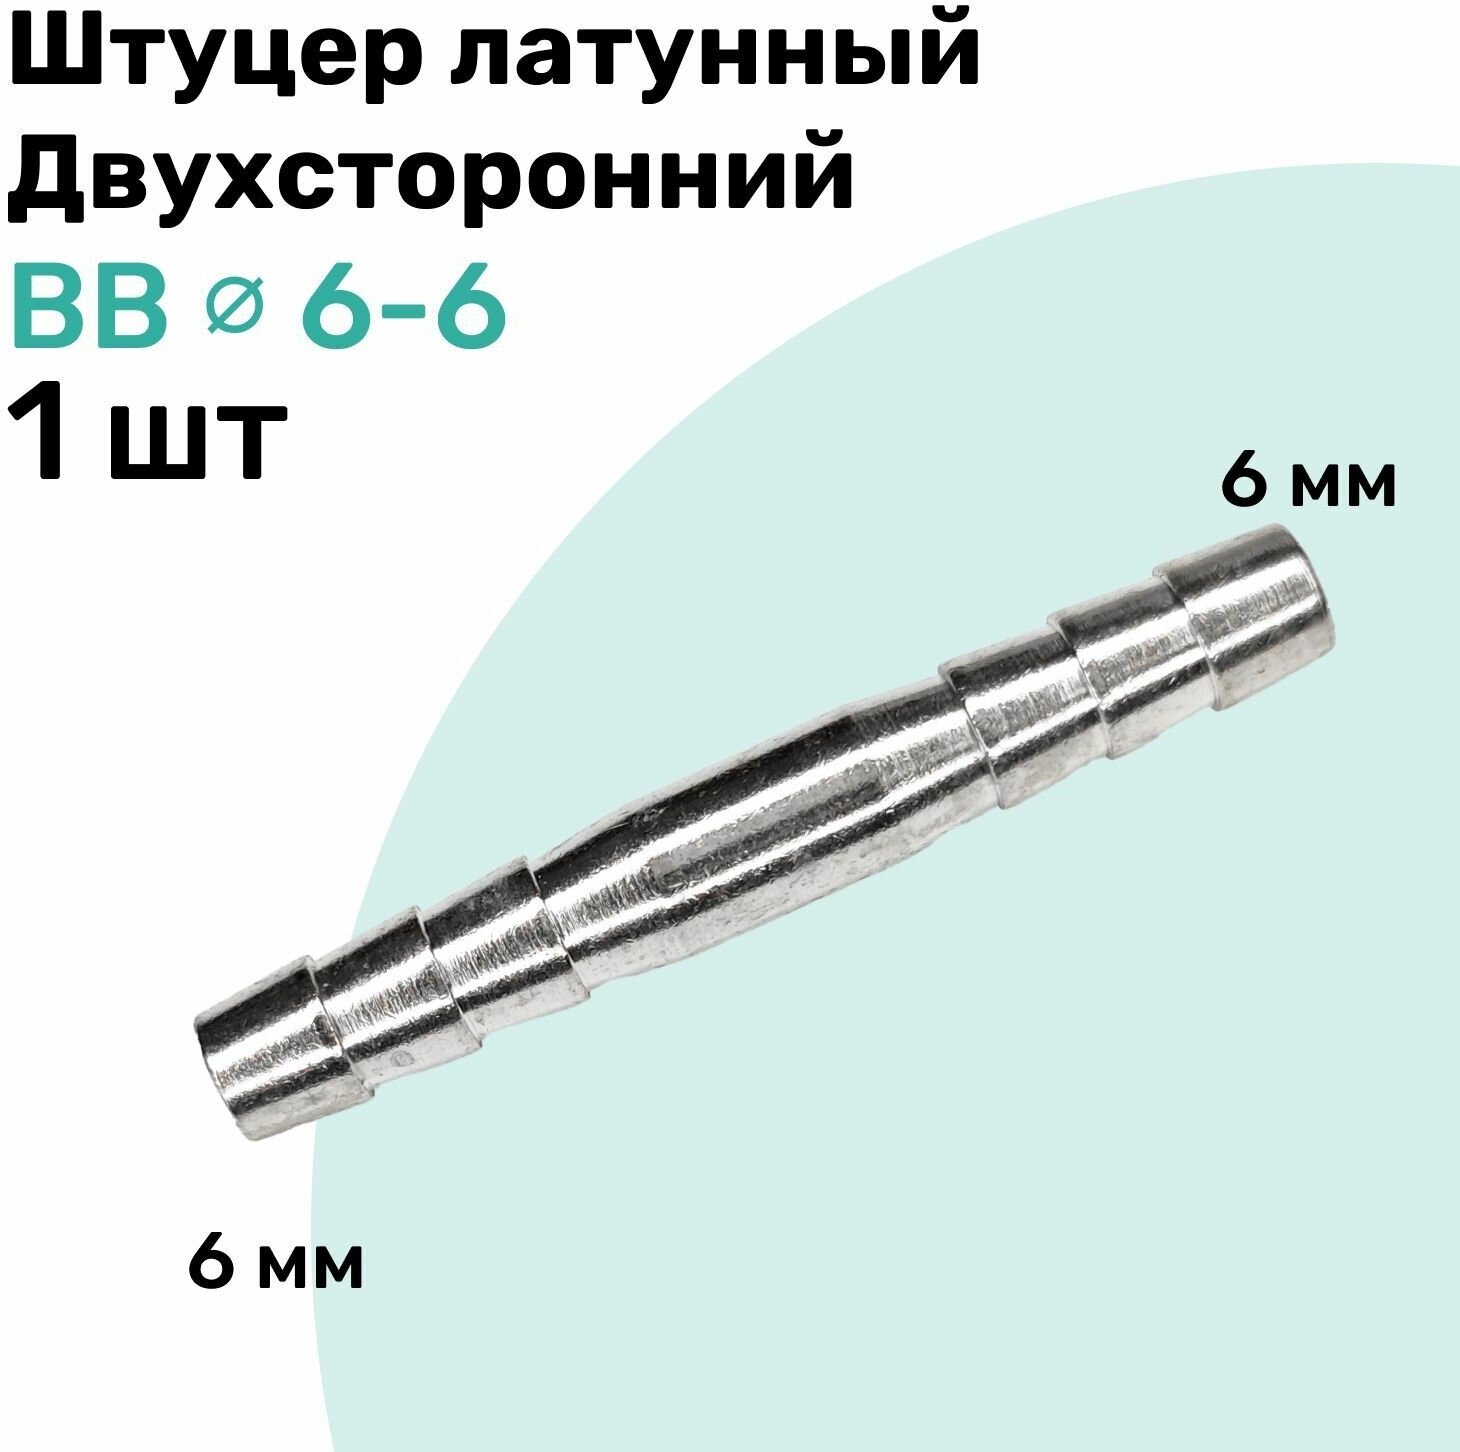 Штуцер латунный елочка двухсторонний BB 6мм-6мм Пневмоштуцер NBPT